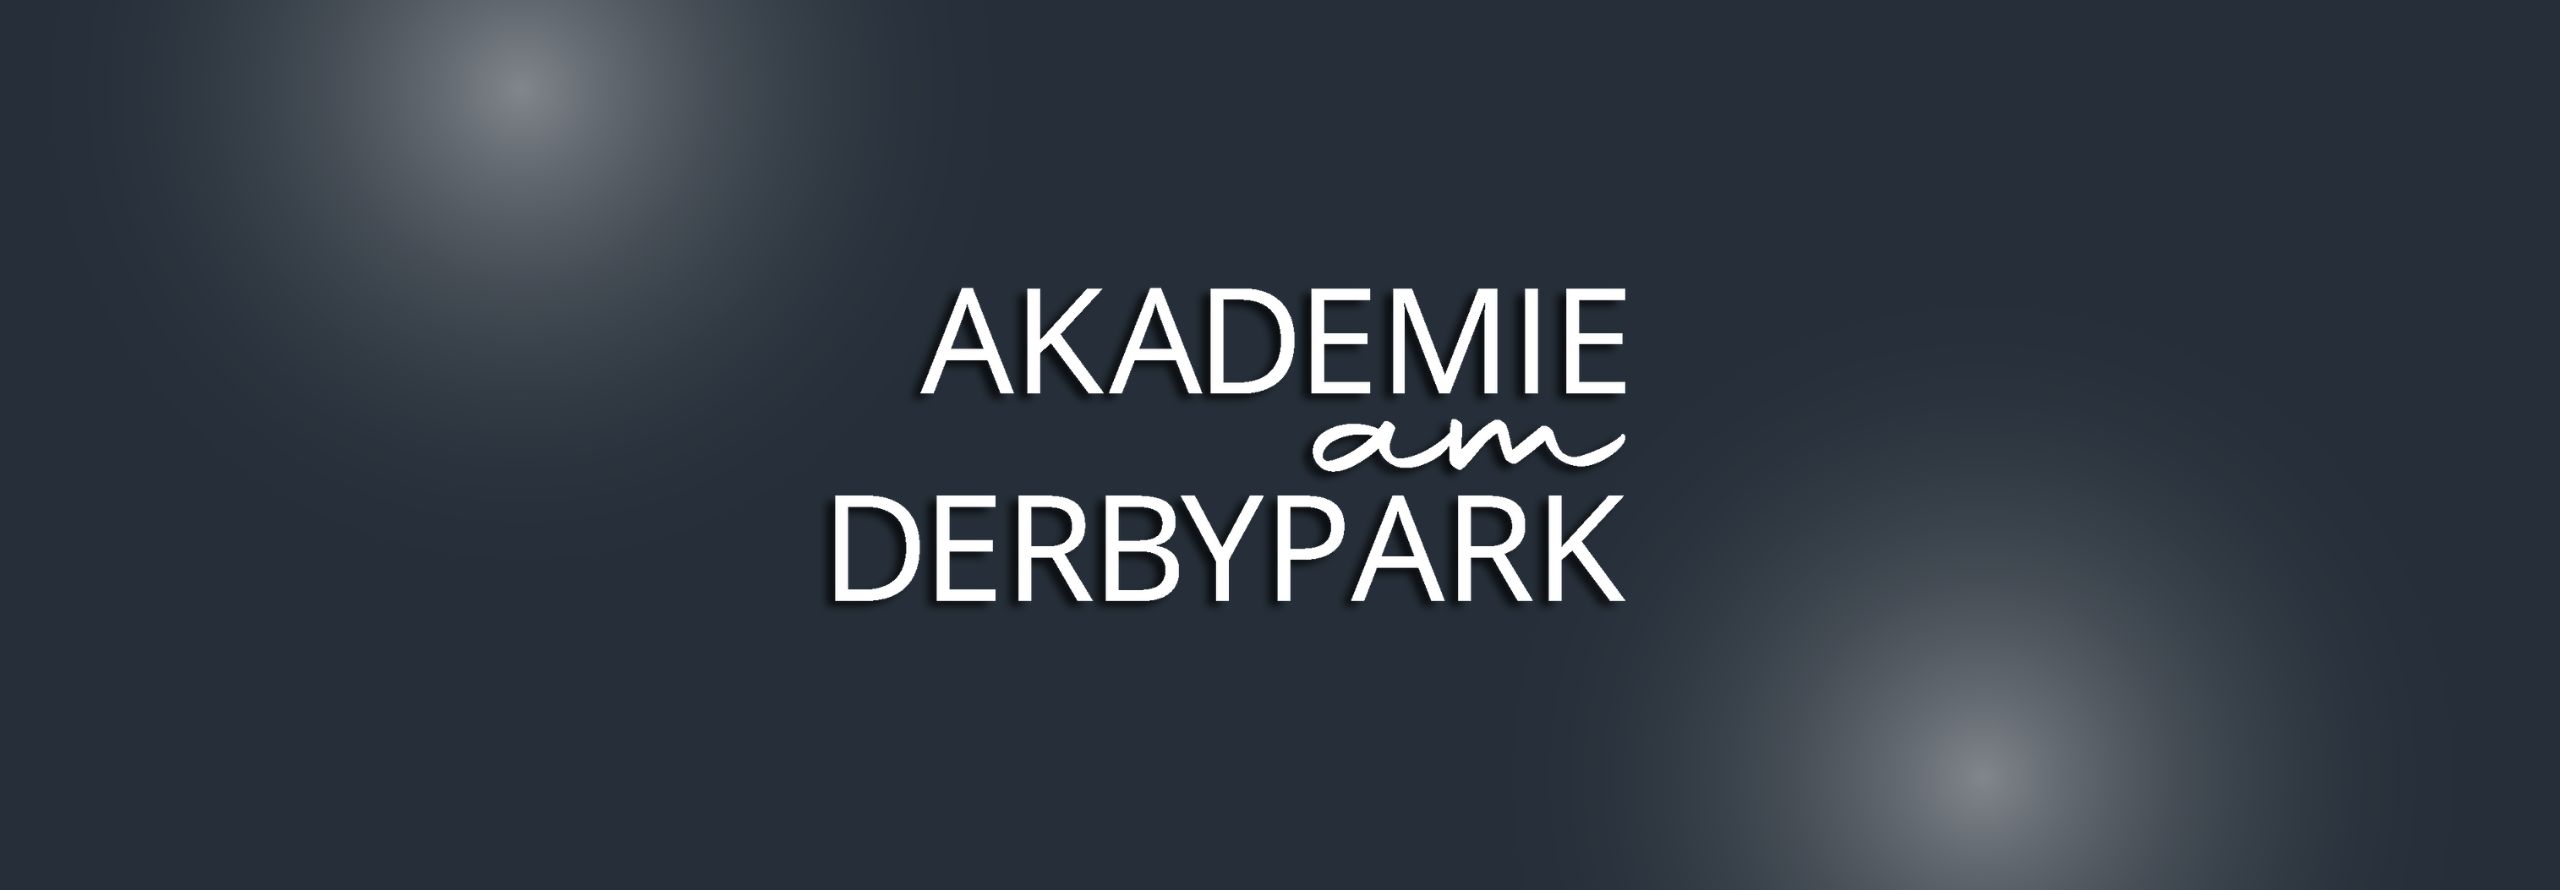 Familienakademie Akademie am Derbypark